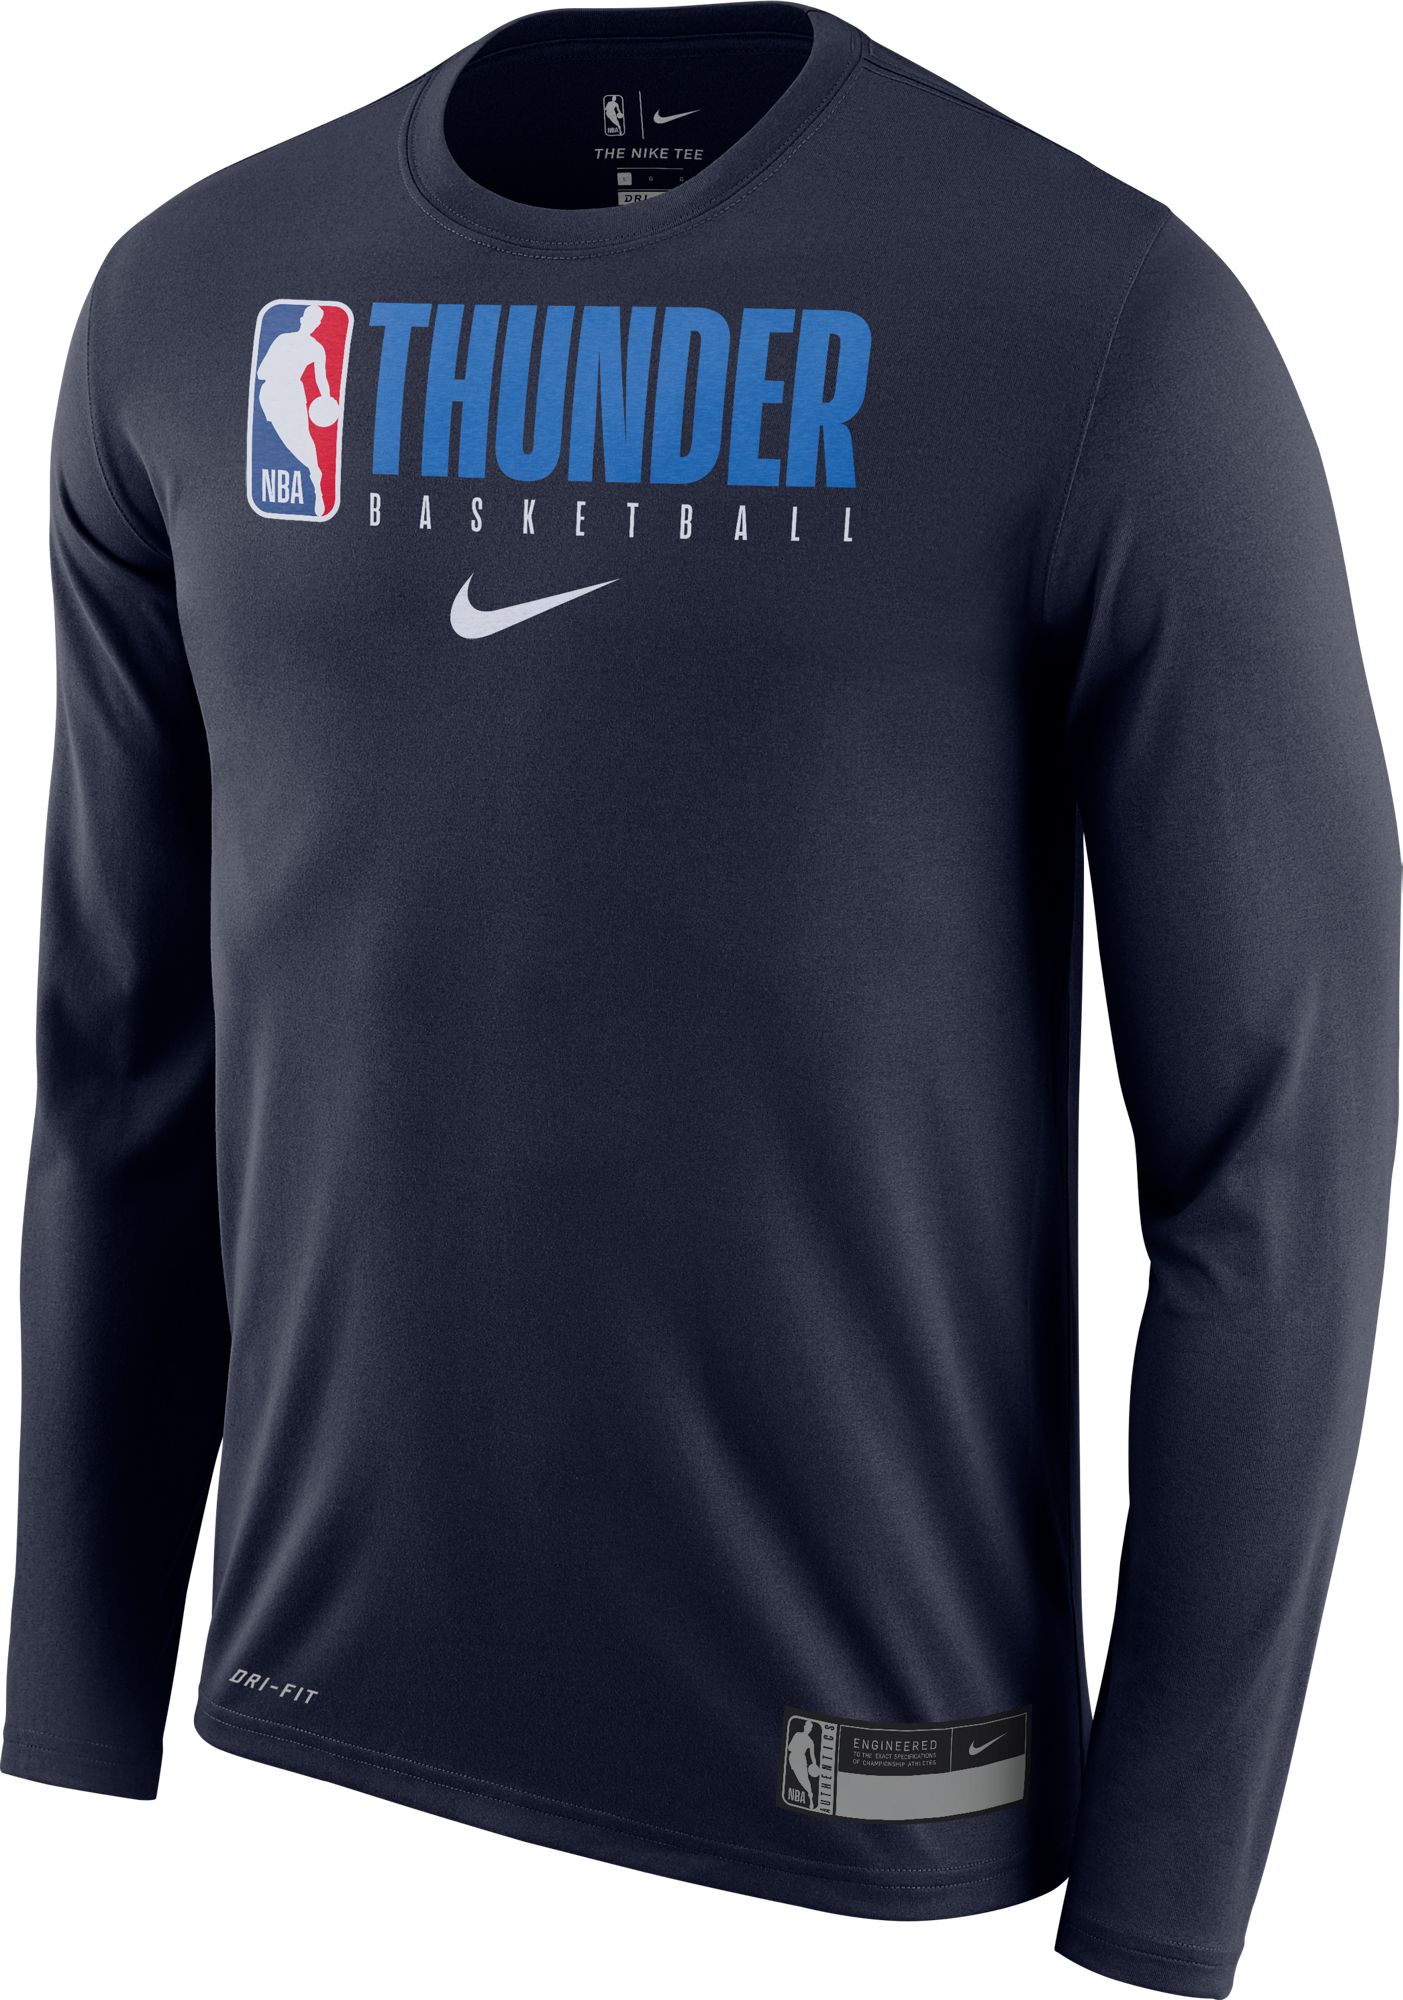 oklahoma city thunder jerseys for sale